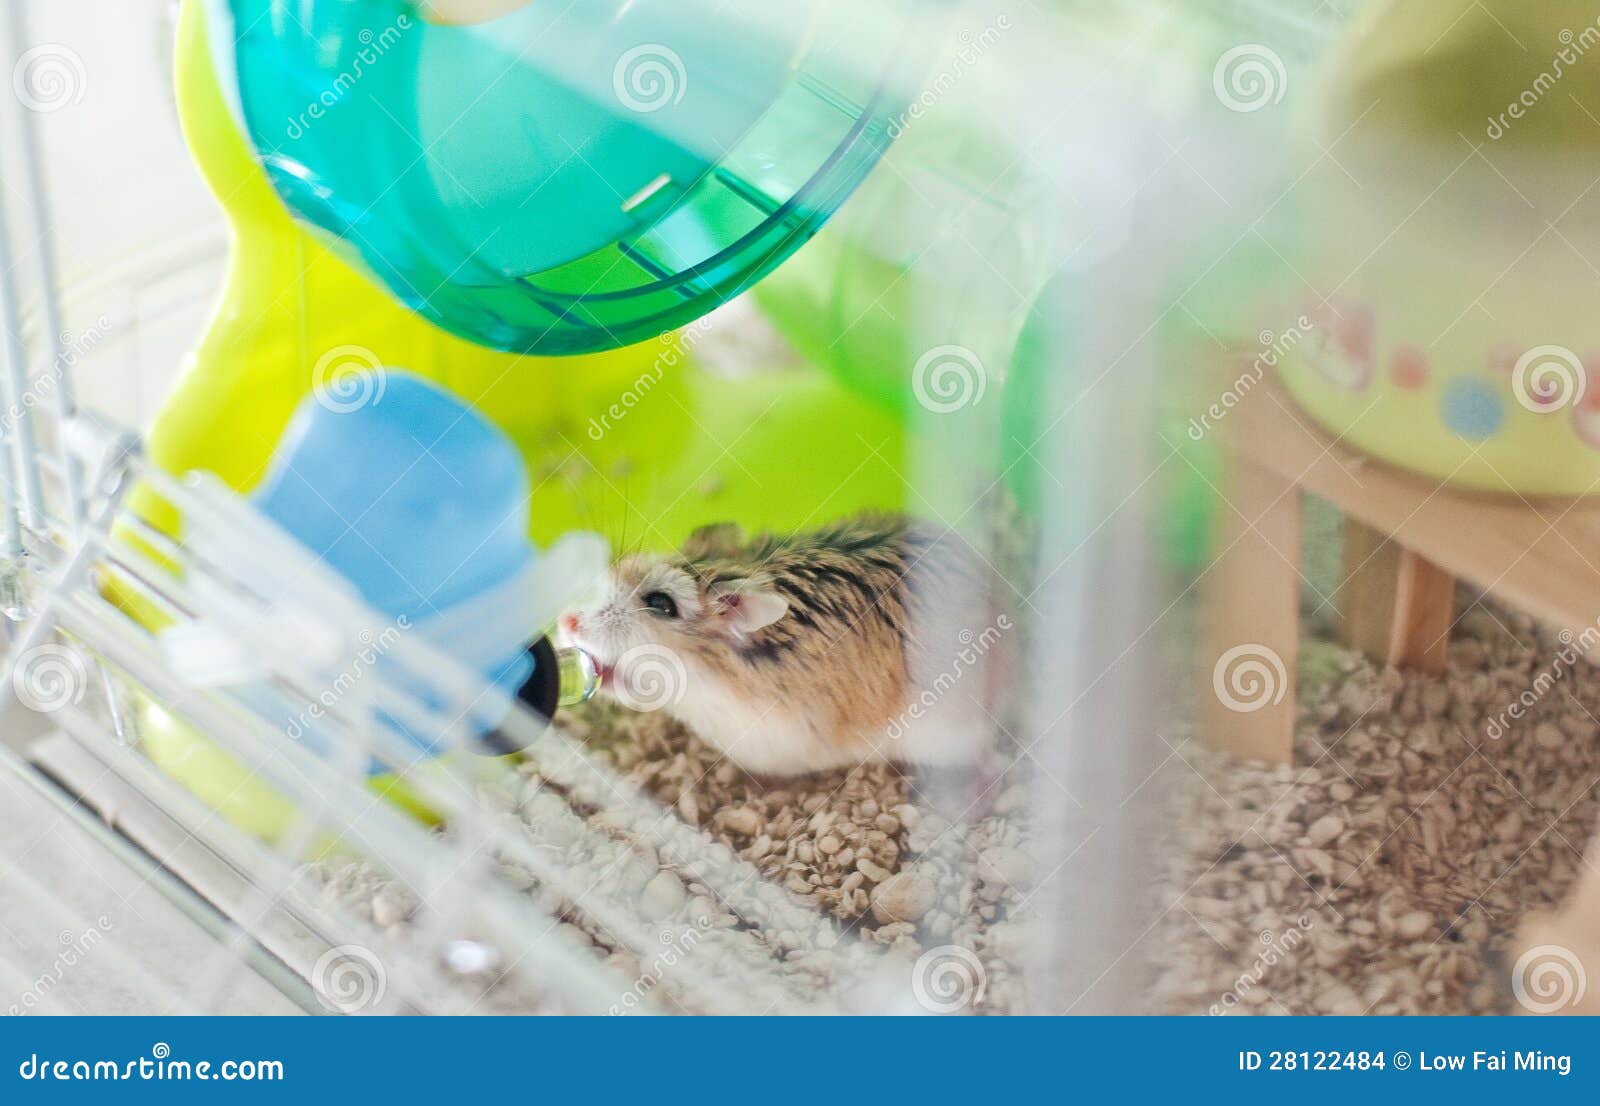 röret hamster